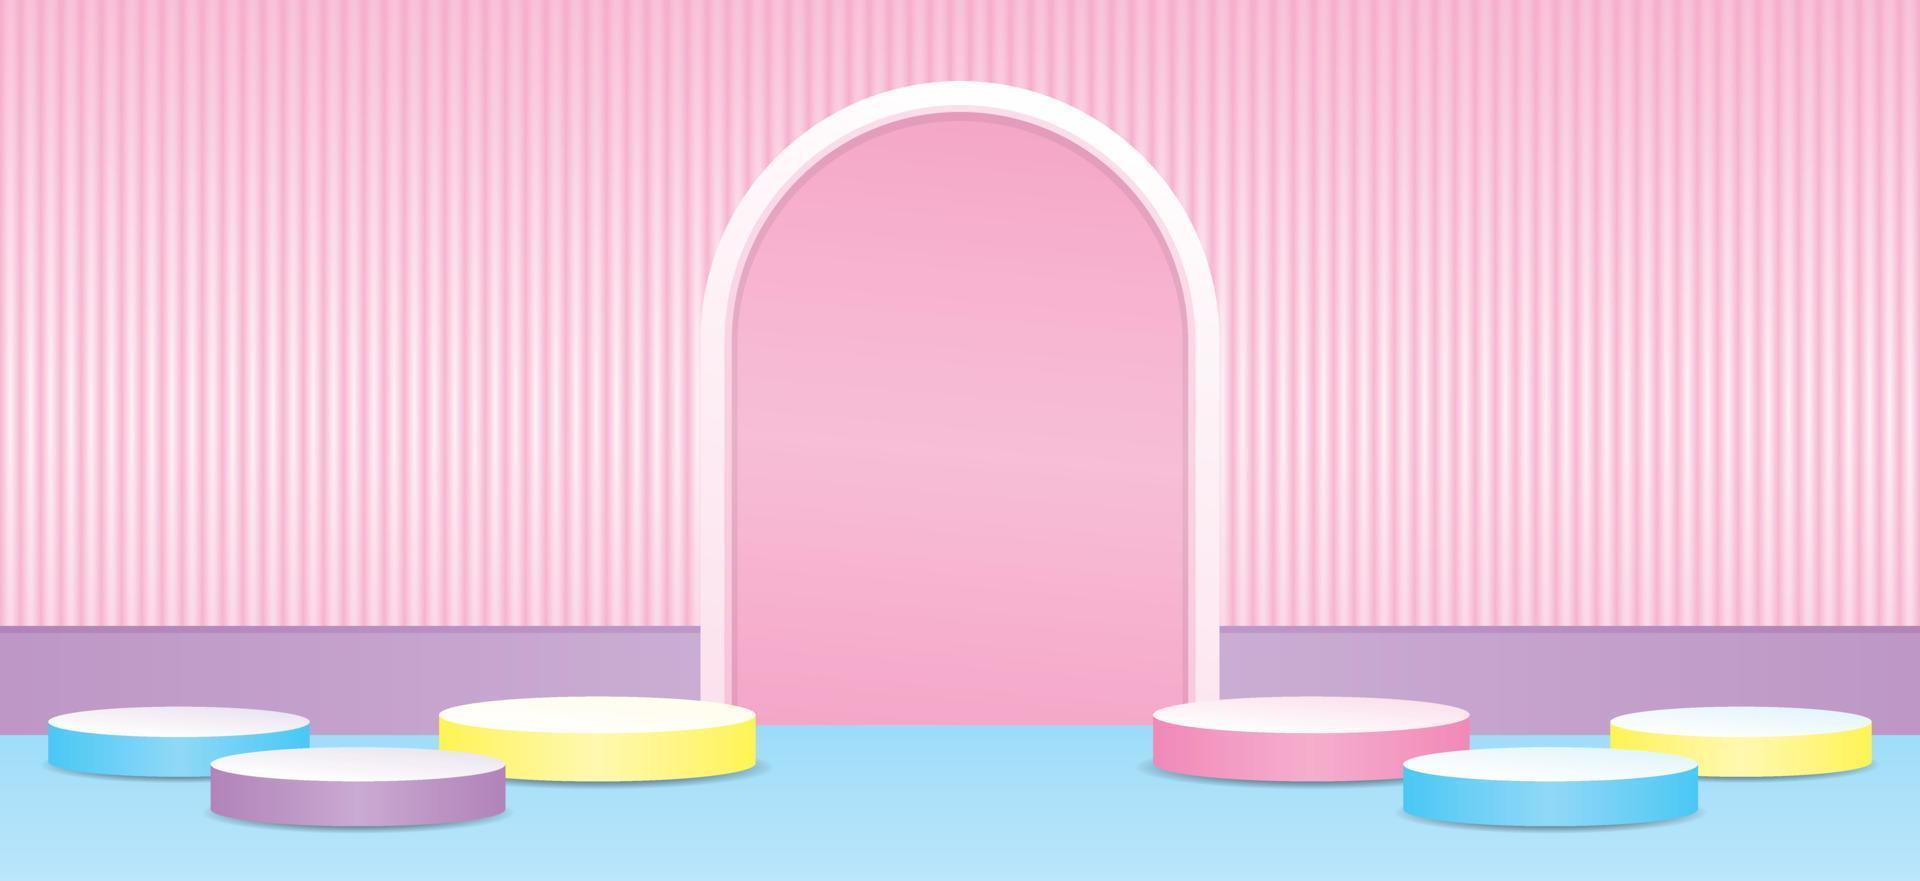 linda pantalla de podio de color pastel dulce femenino con fondo de arco vector de ilustración 3d para poner su objeto